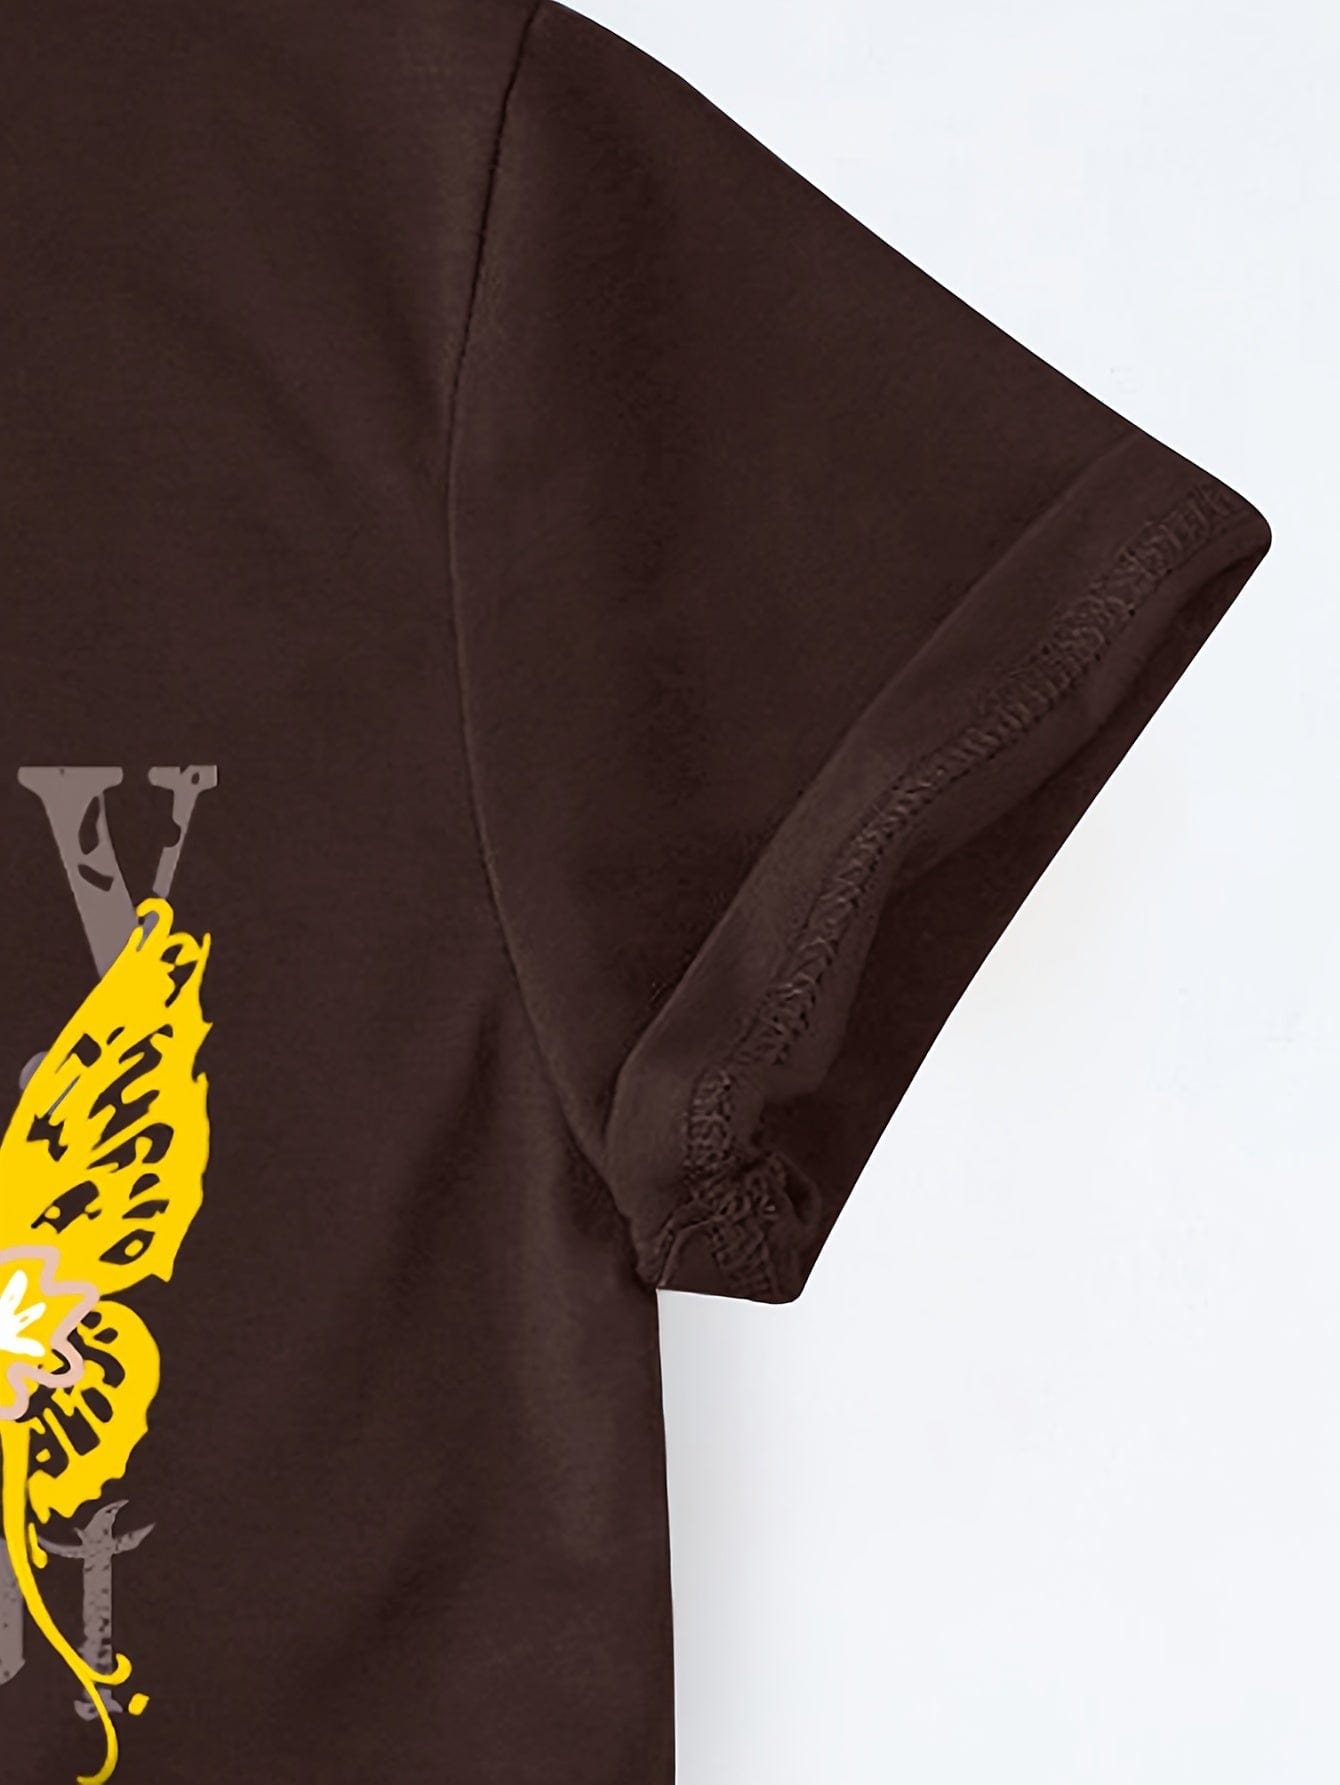 Skull & Butterfly Print Crew Neck T-shirt for Women